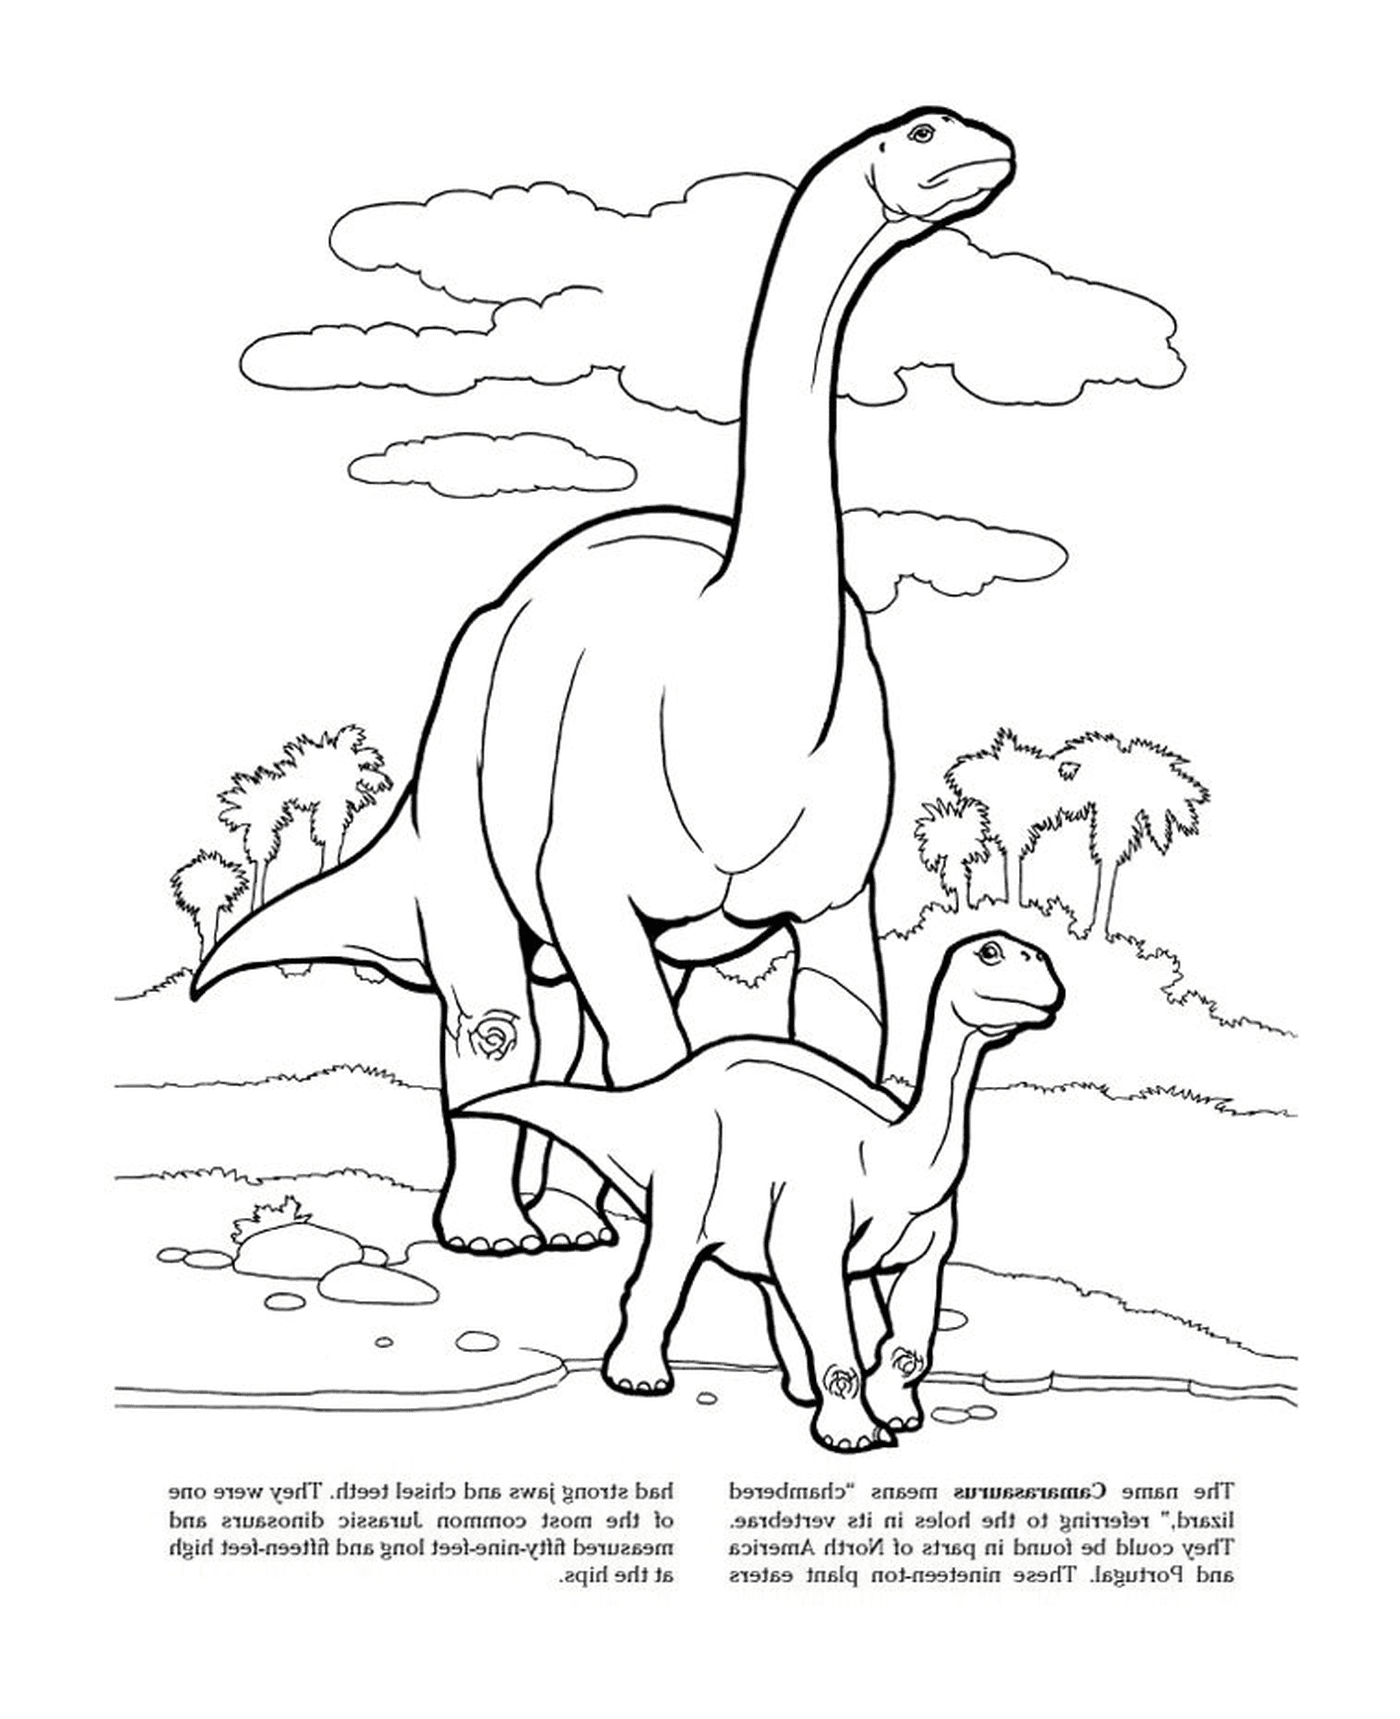  Camarasaurus im Jurassic Park, eine Familie von Dinosauriern 